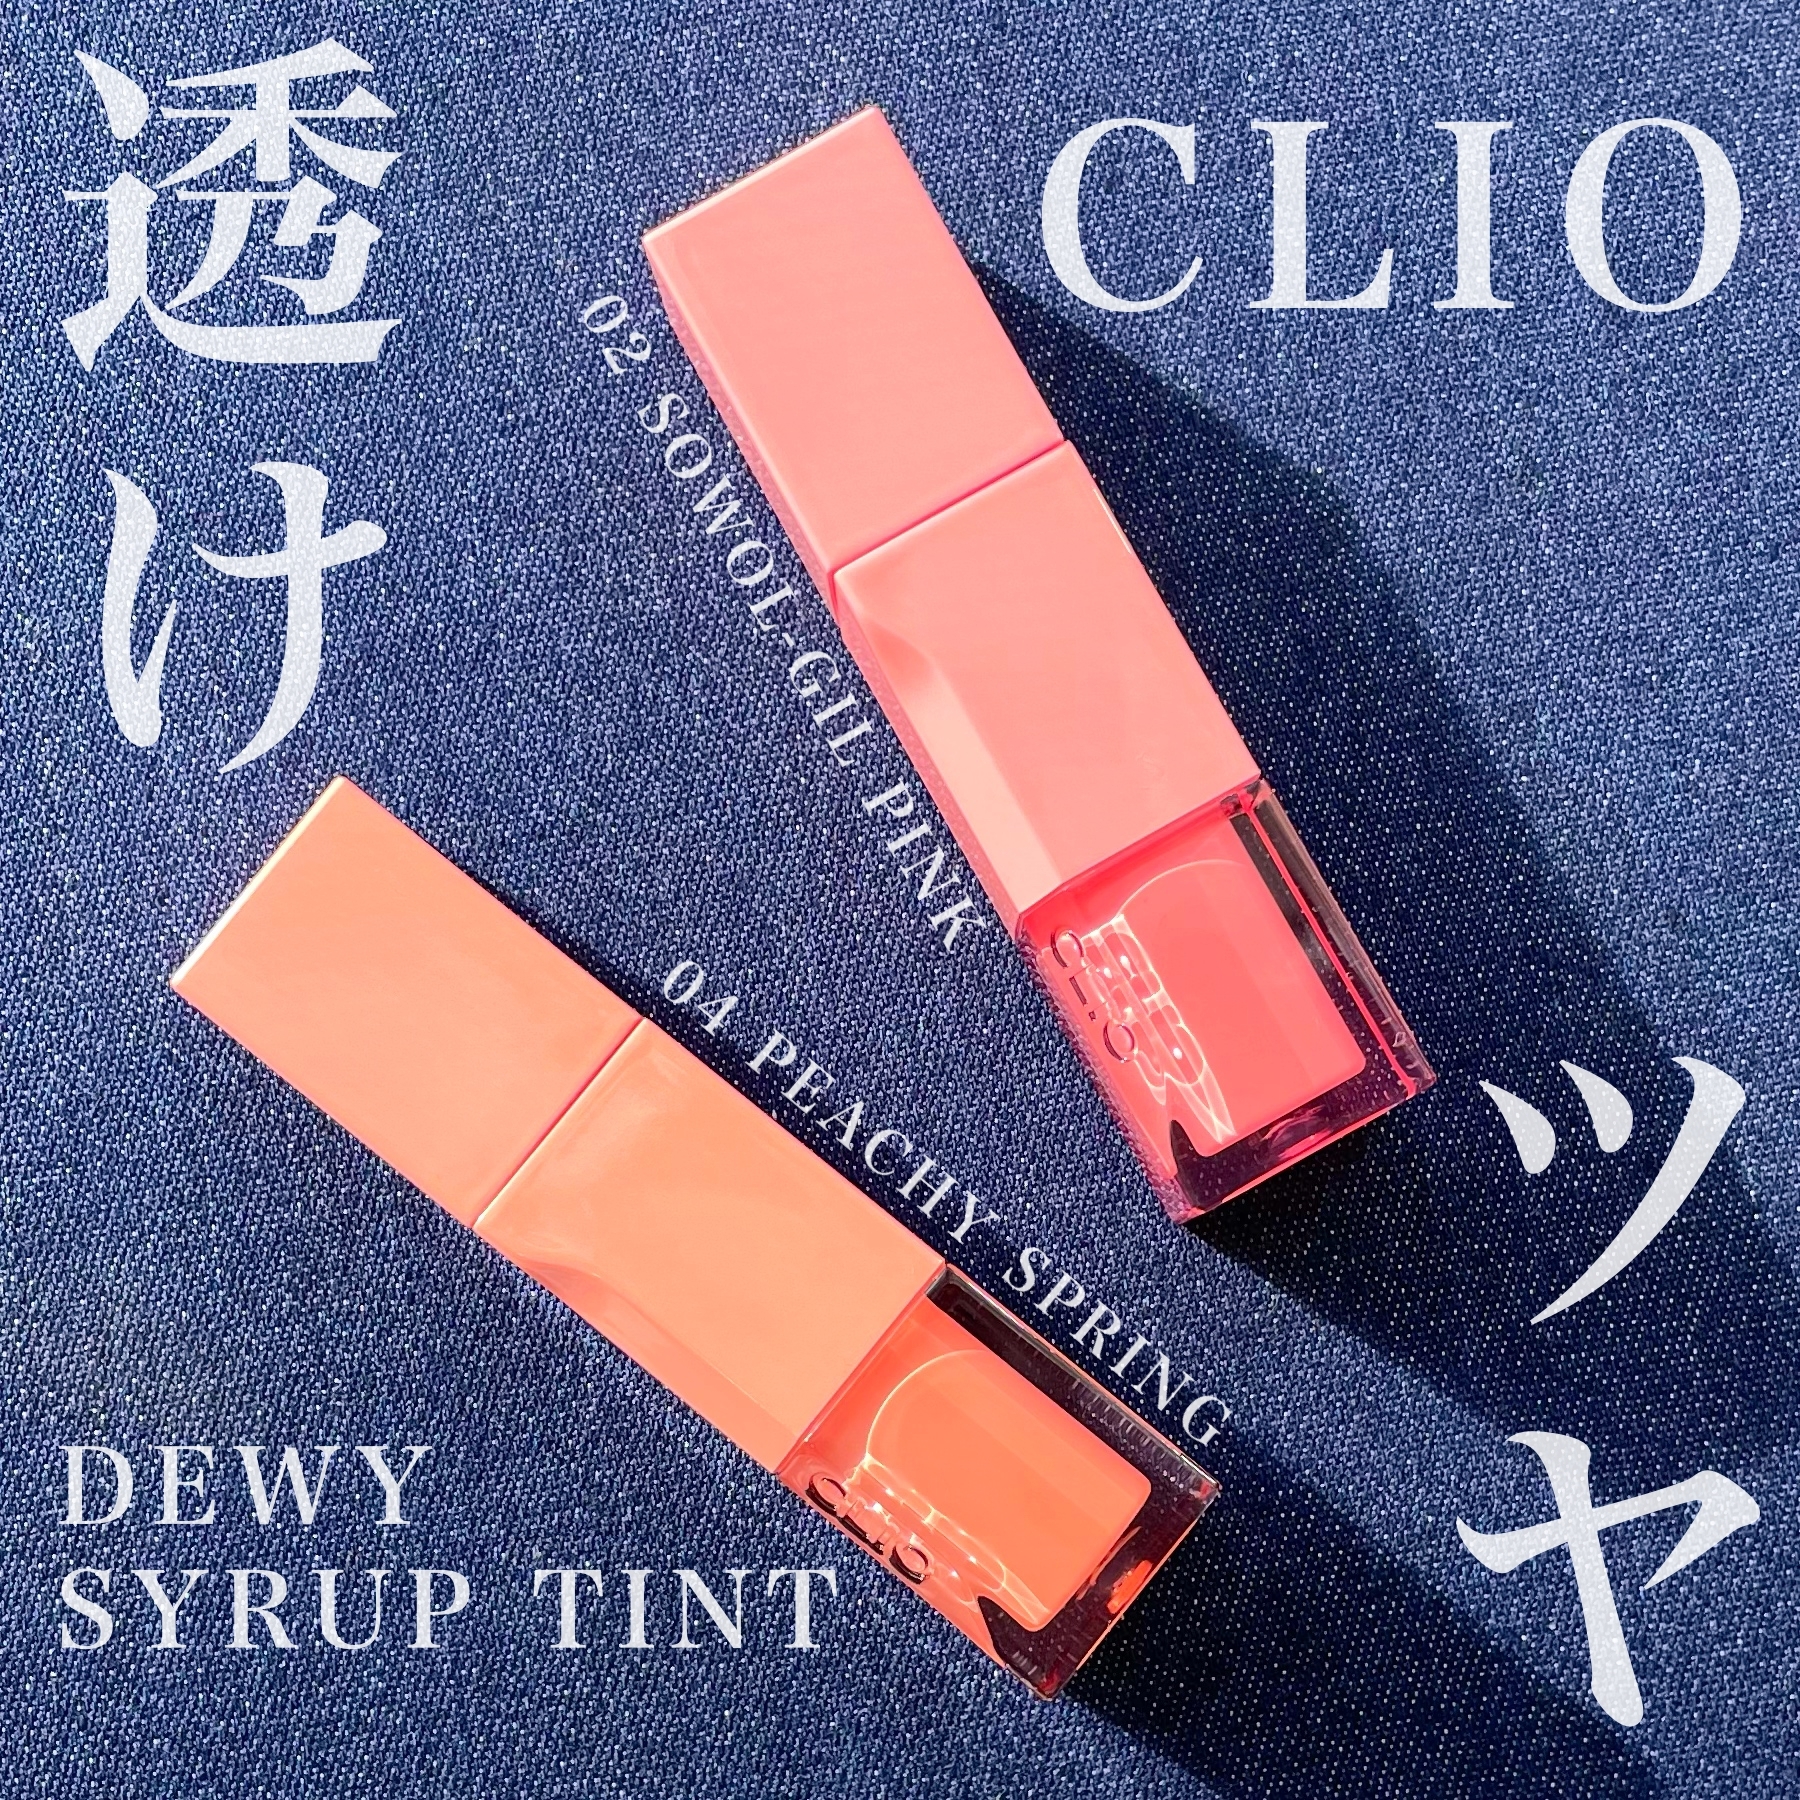 CLIO(クリオ) デューイ シロップ ティントの良い点・メリットに関するKeiさんの口コミ画像1